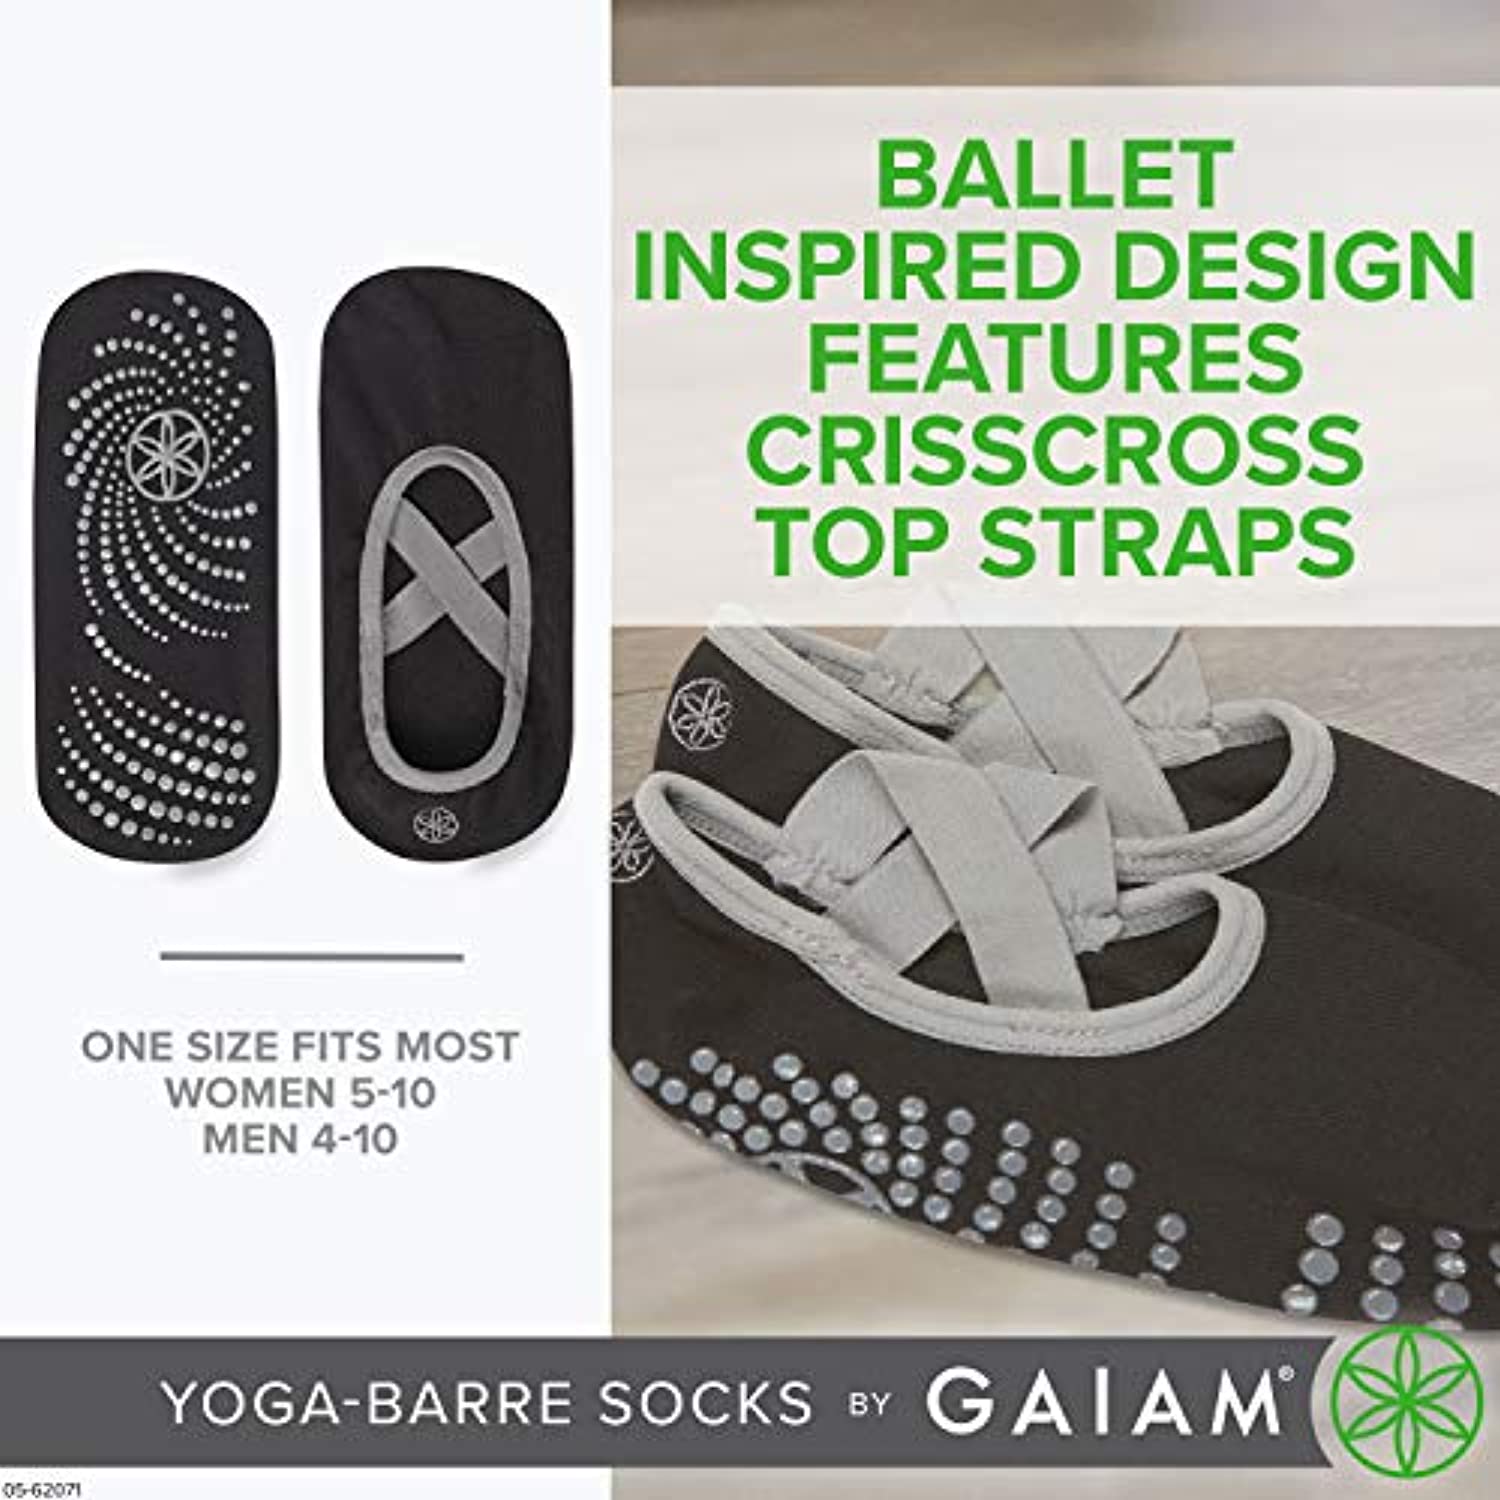 Gaiam calcetines de yoga para niños (2 unidades)